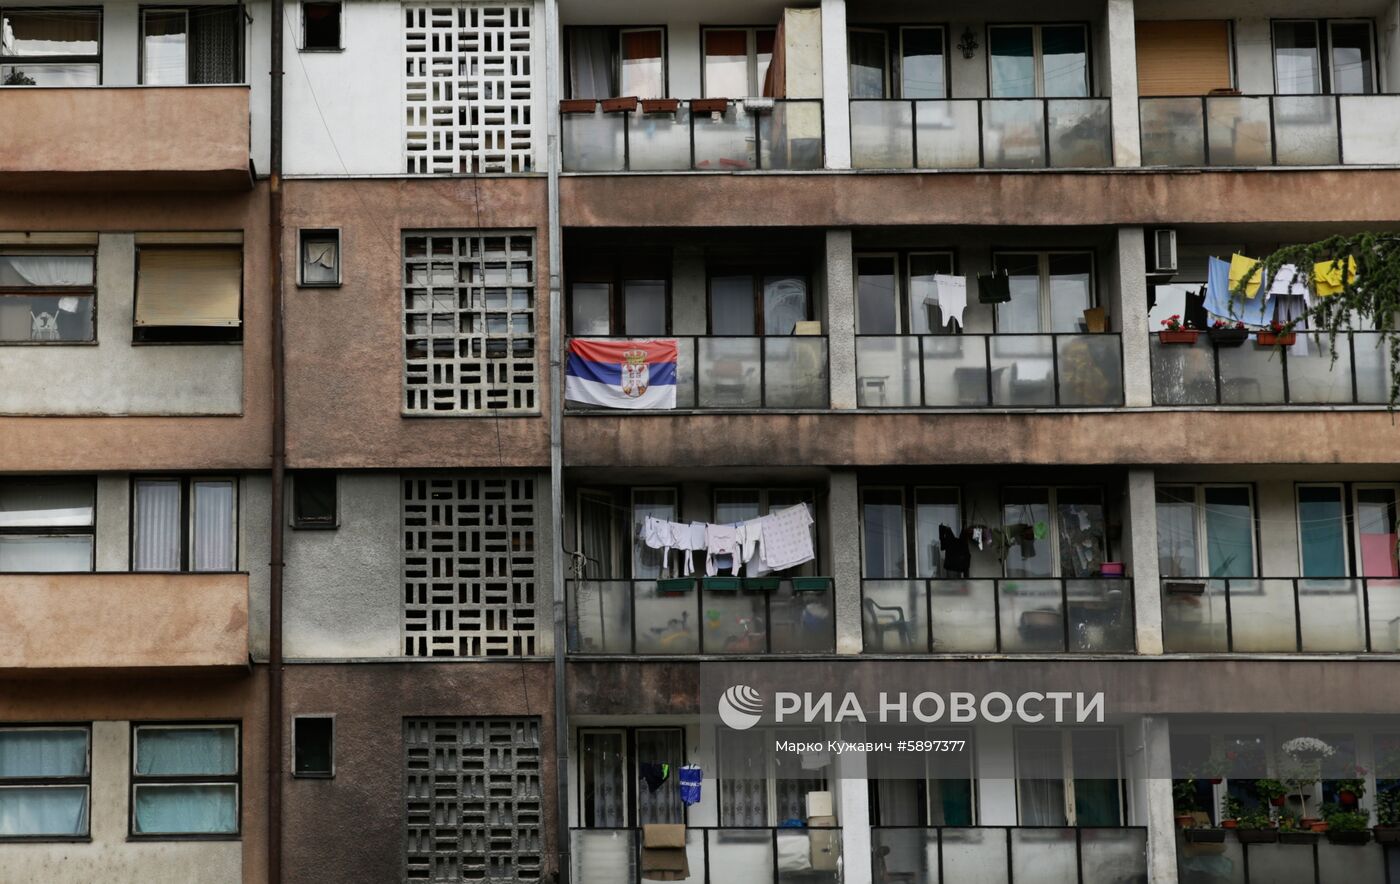 Акция против действий Приштины в Косово